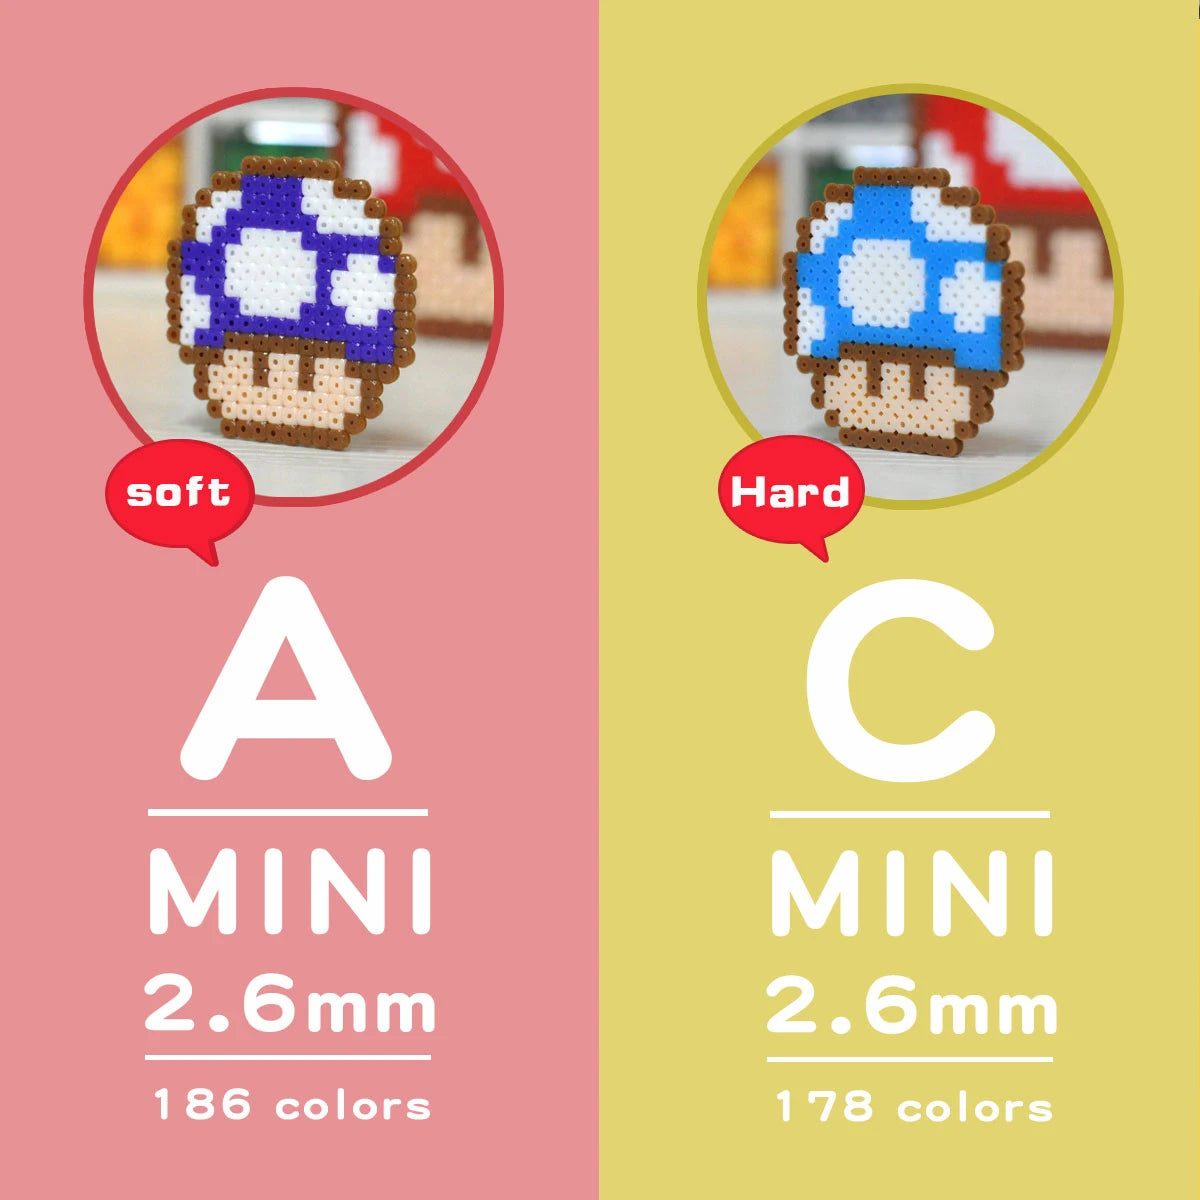 Hvad er forskellen mellem A-2.6 mm og C-2.6 mm Mini Artkal Beads?